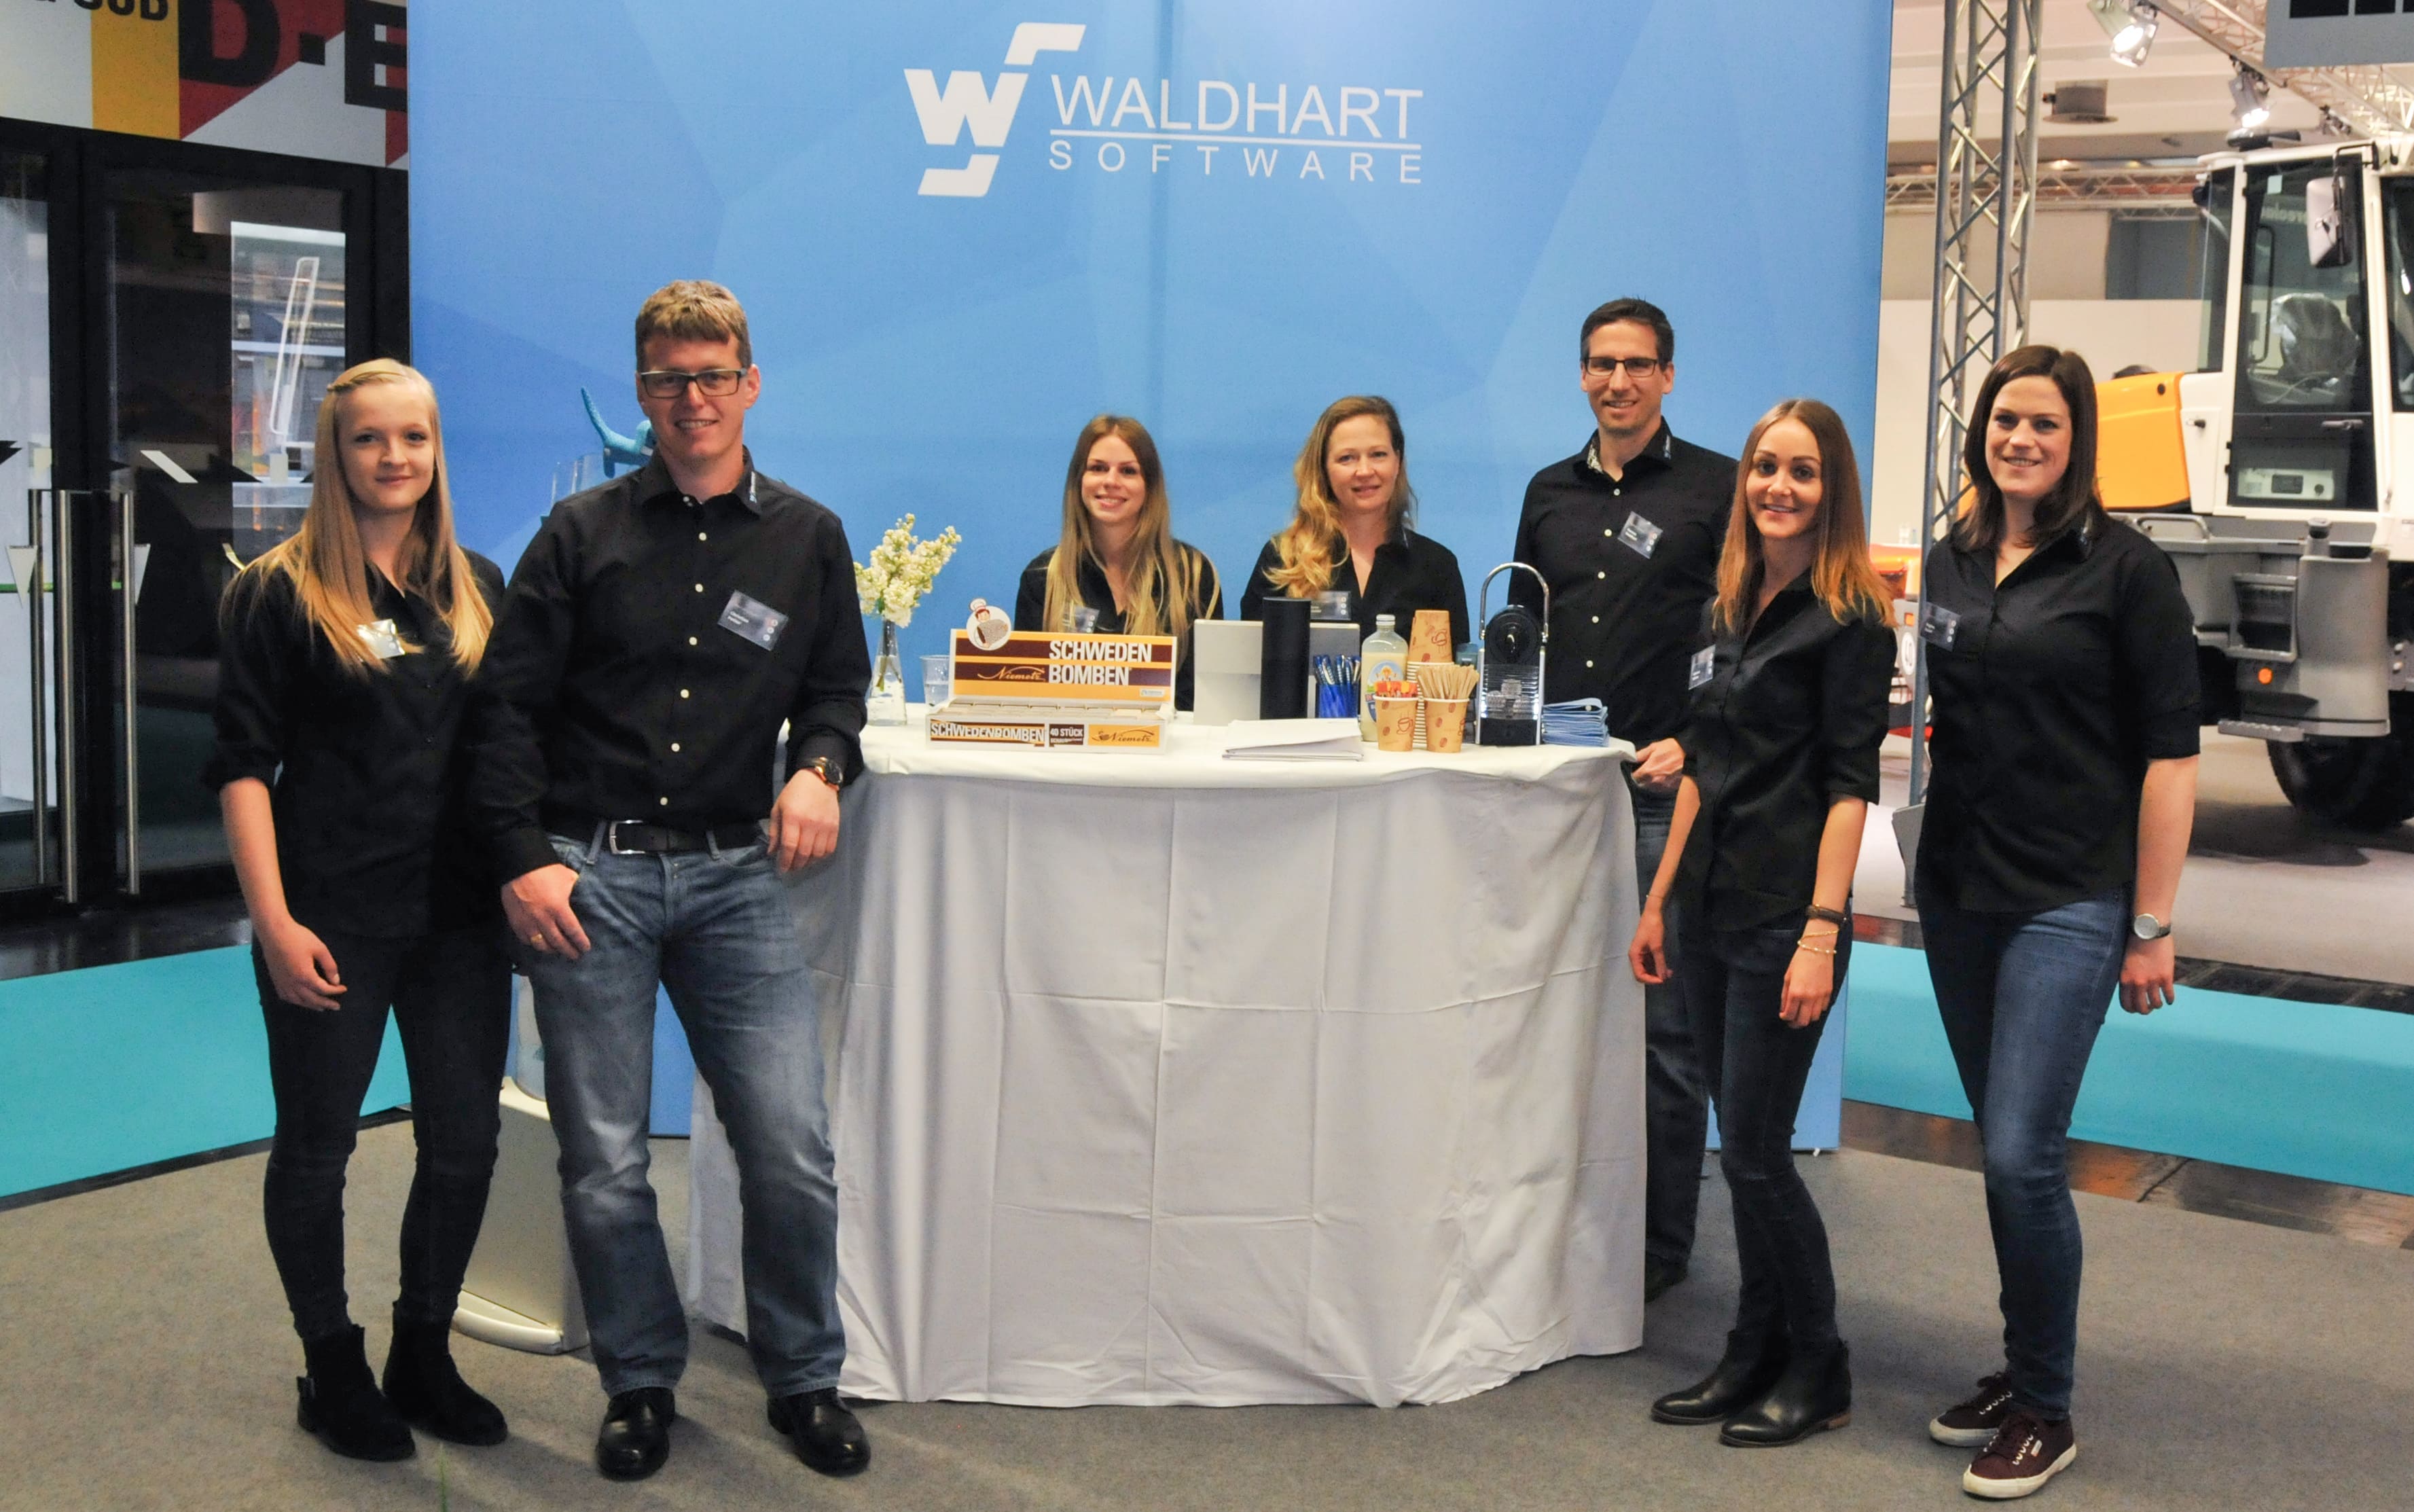 Waldhart Software at the Interalpin 2017